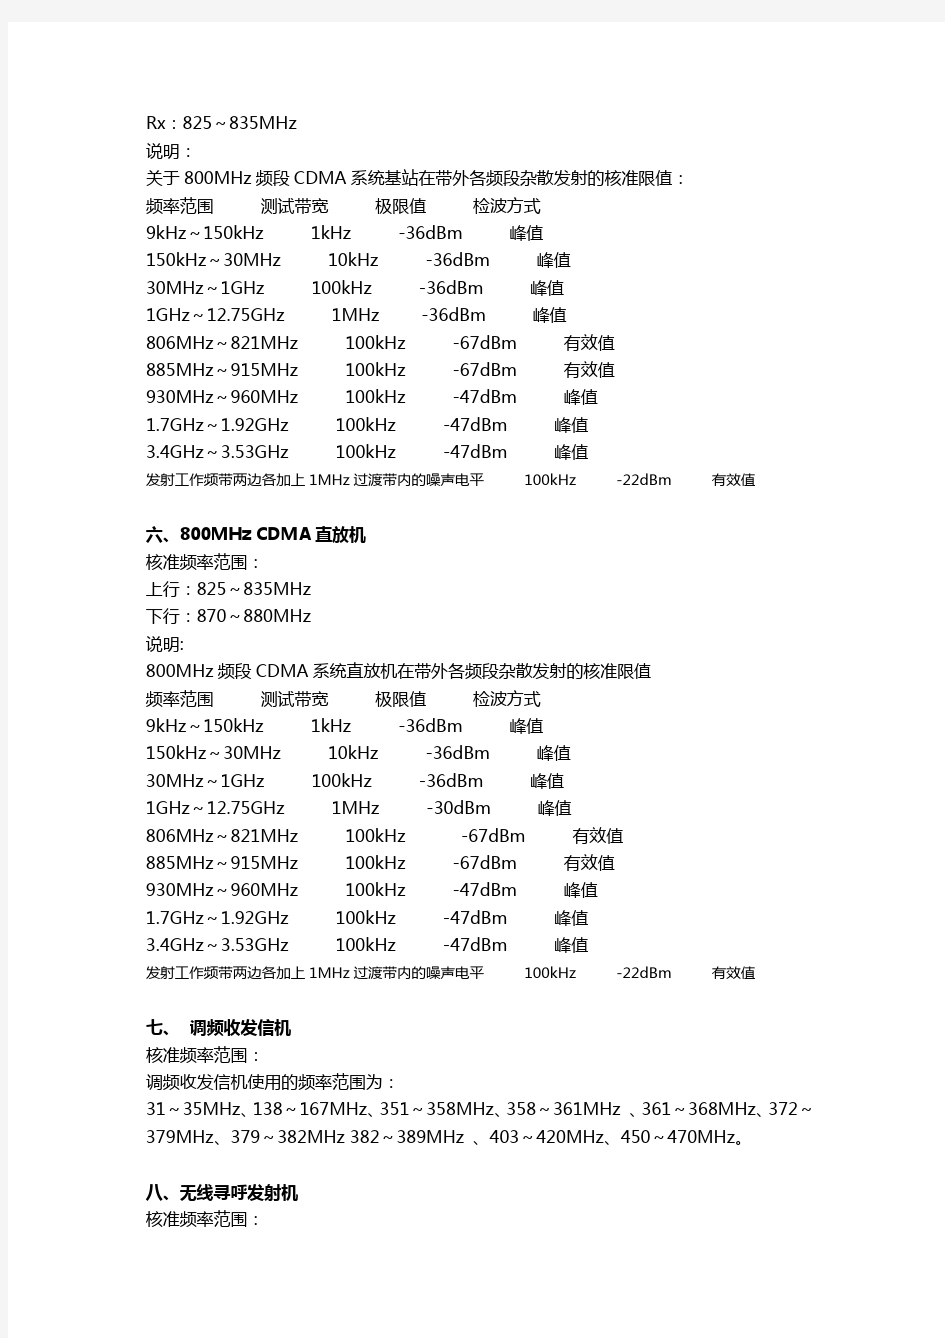 (仅供参考)中国通信频段划分(全)